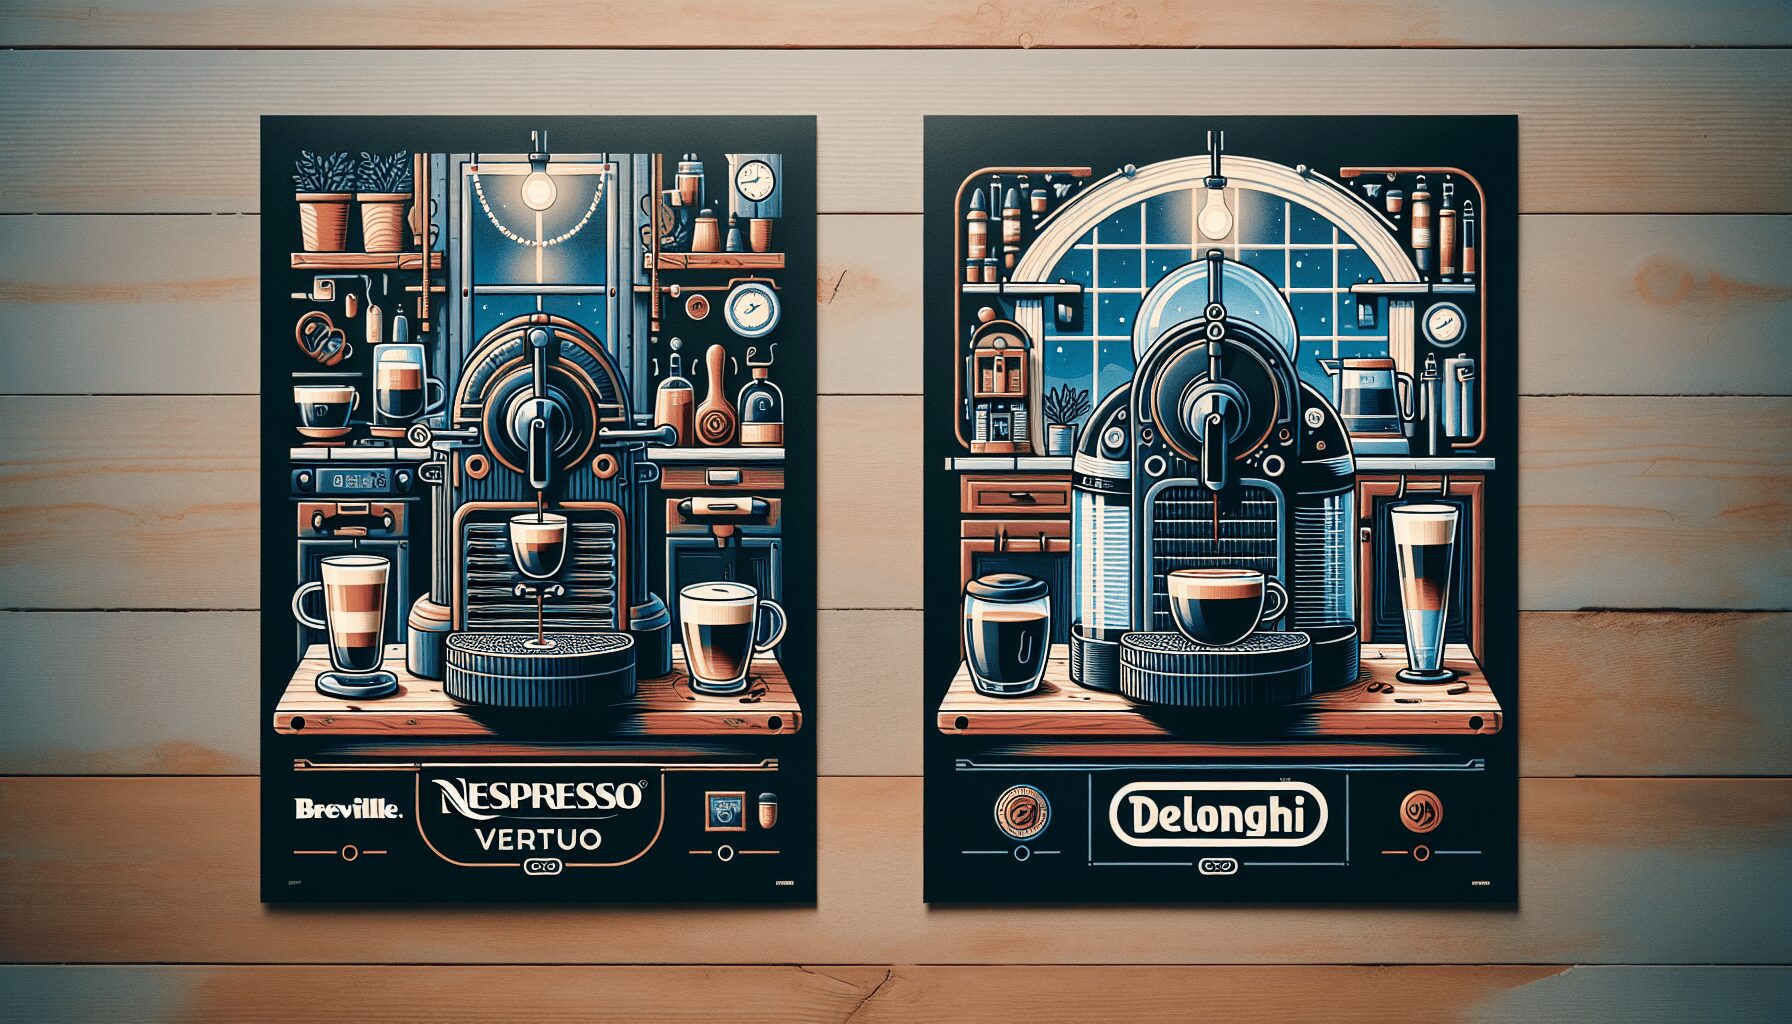 Nespresso Vertuo: Breville or Delonghi